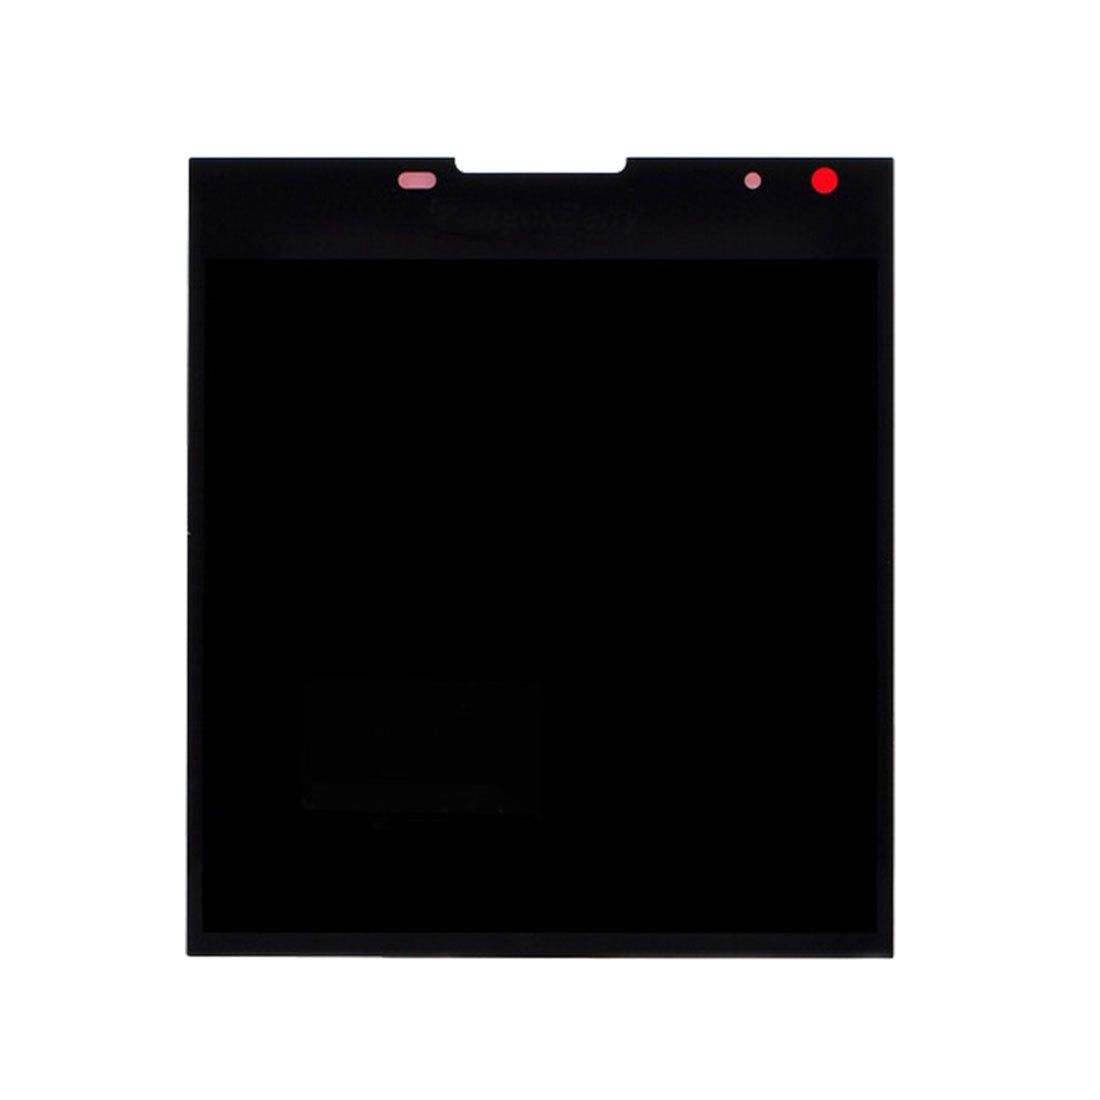 Pantalla LCD + Tactil Digitalizador BlackBerry Passport Q30 Negro